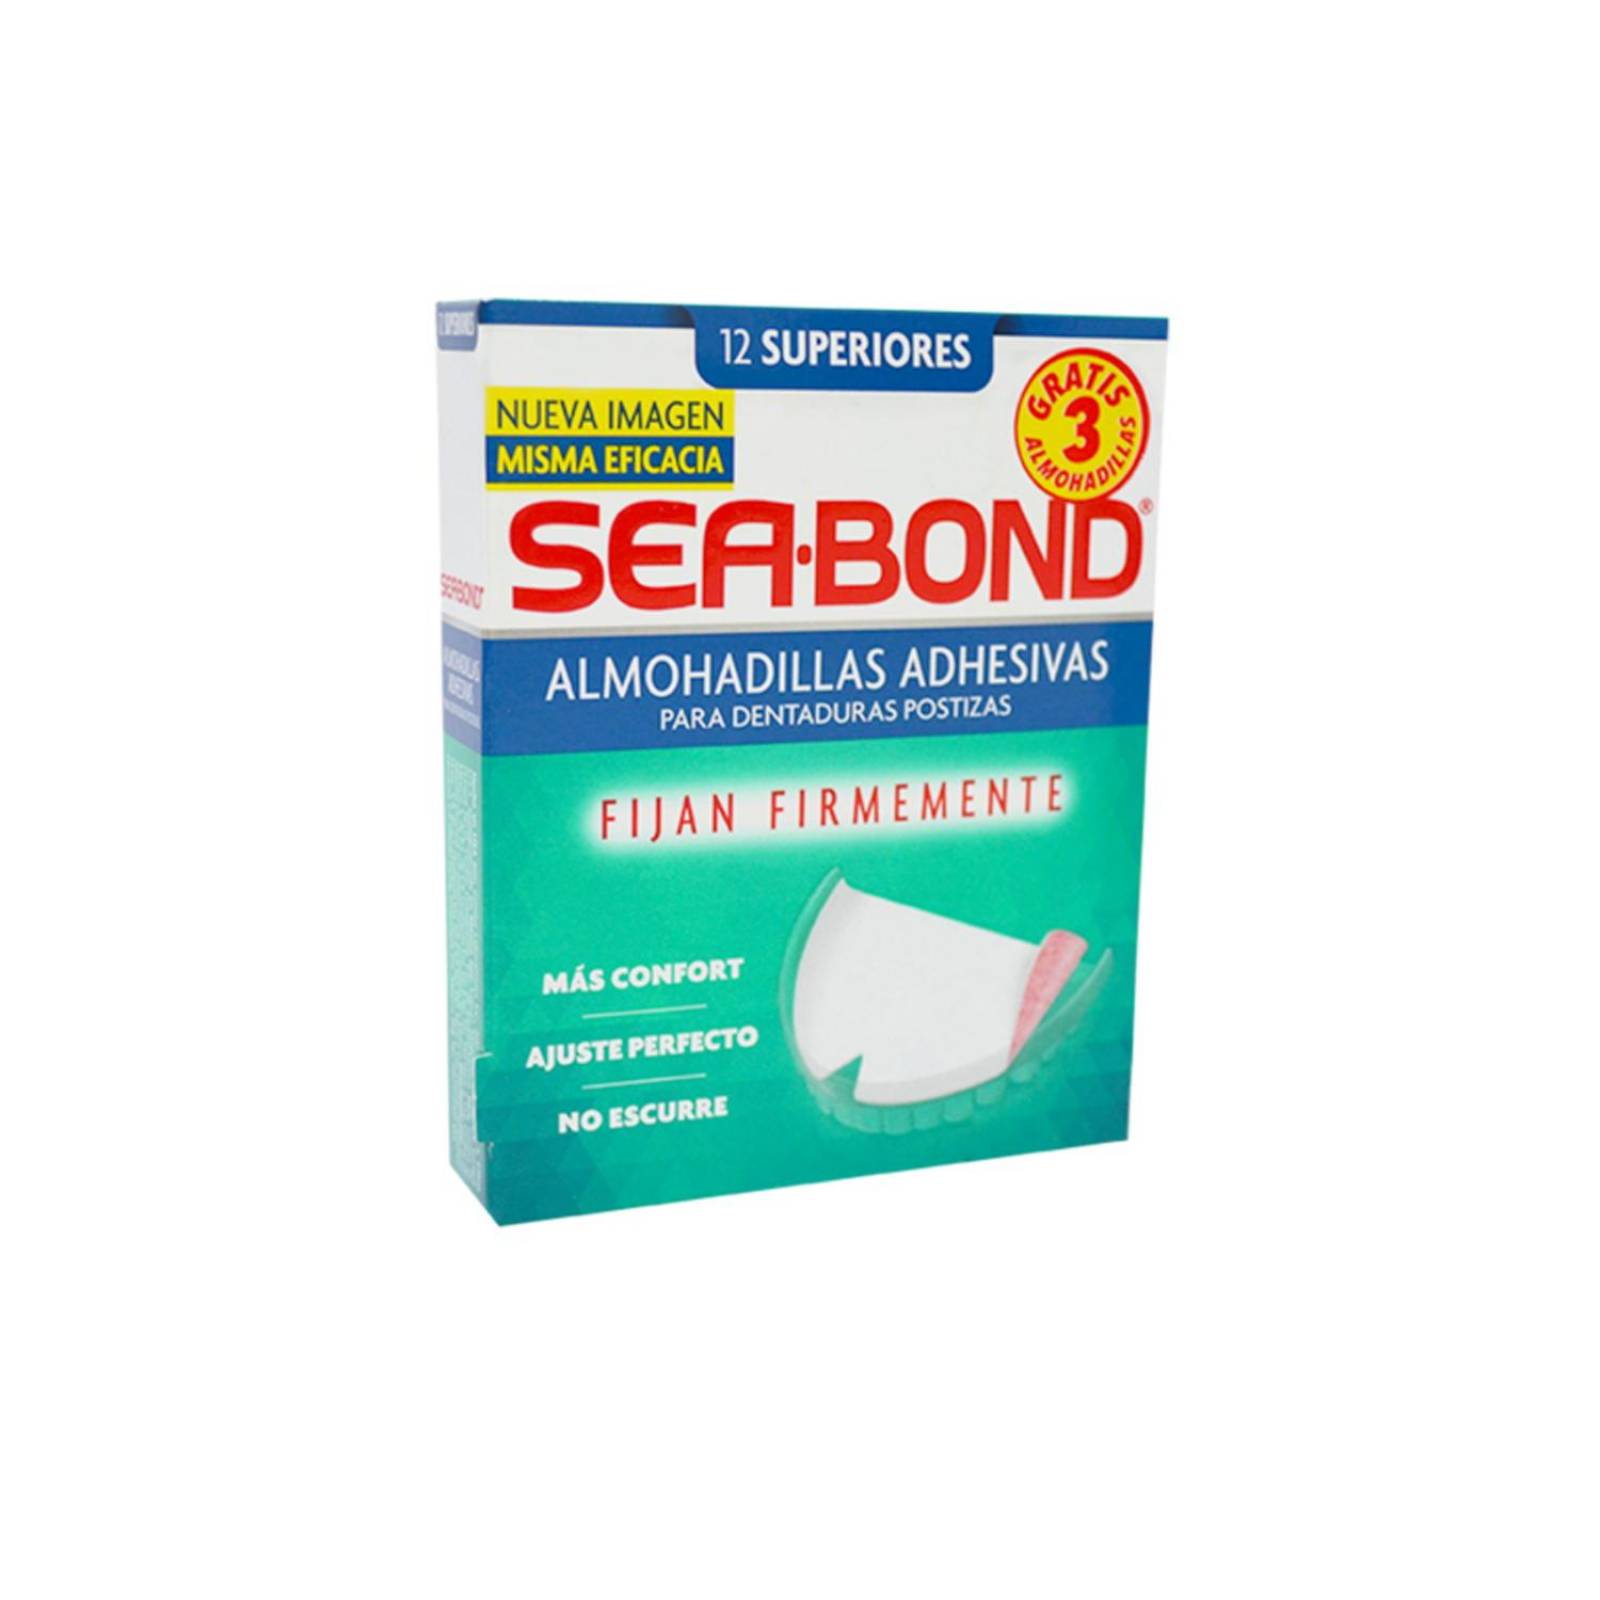 Sea Bond Almohadillas Adhesivas Superiores Caja con 12 Piezas 